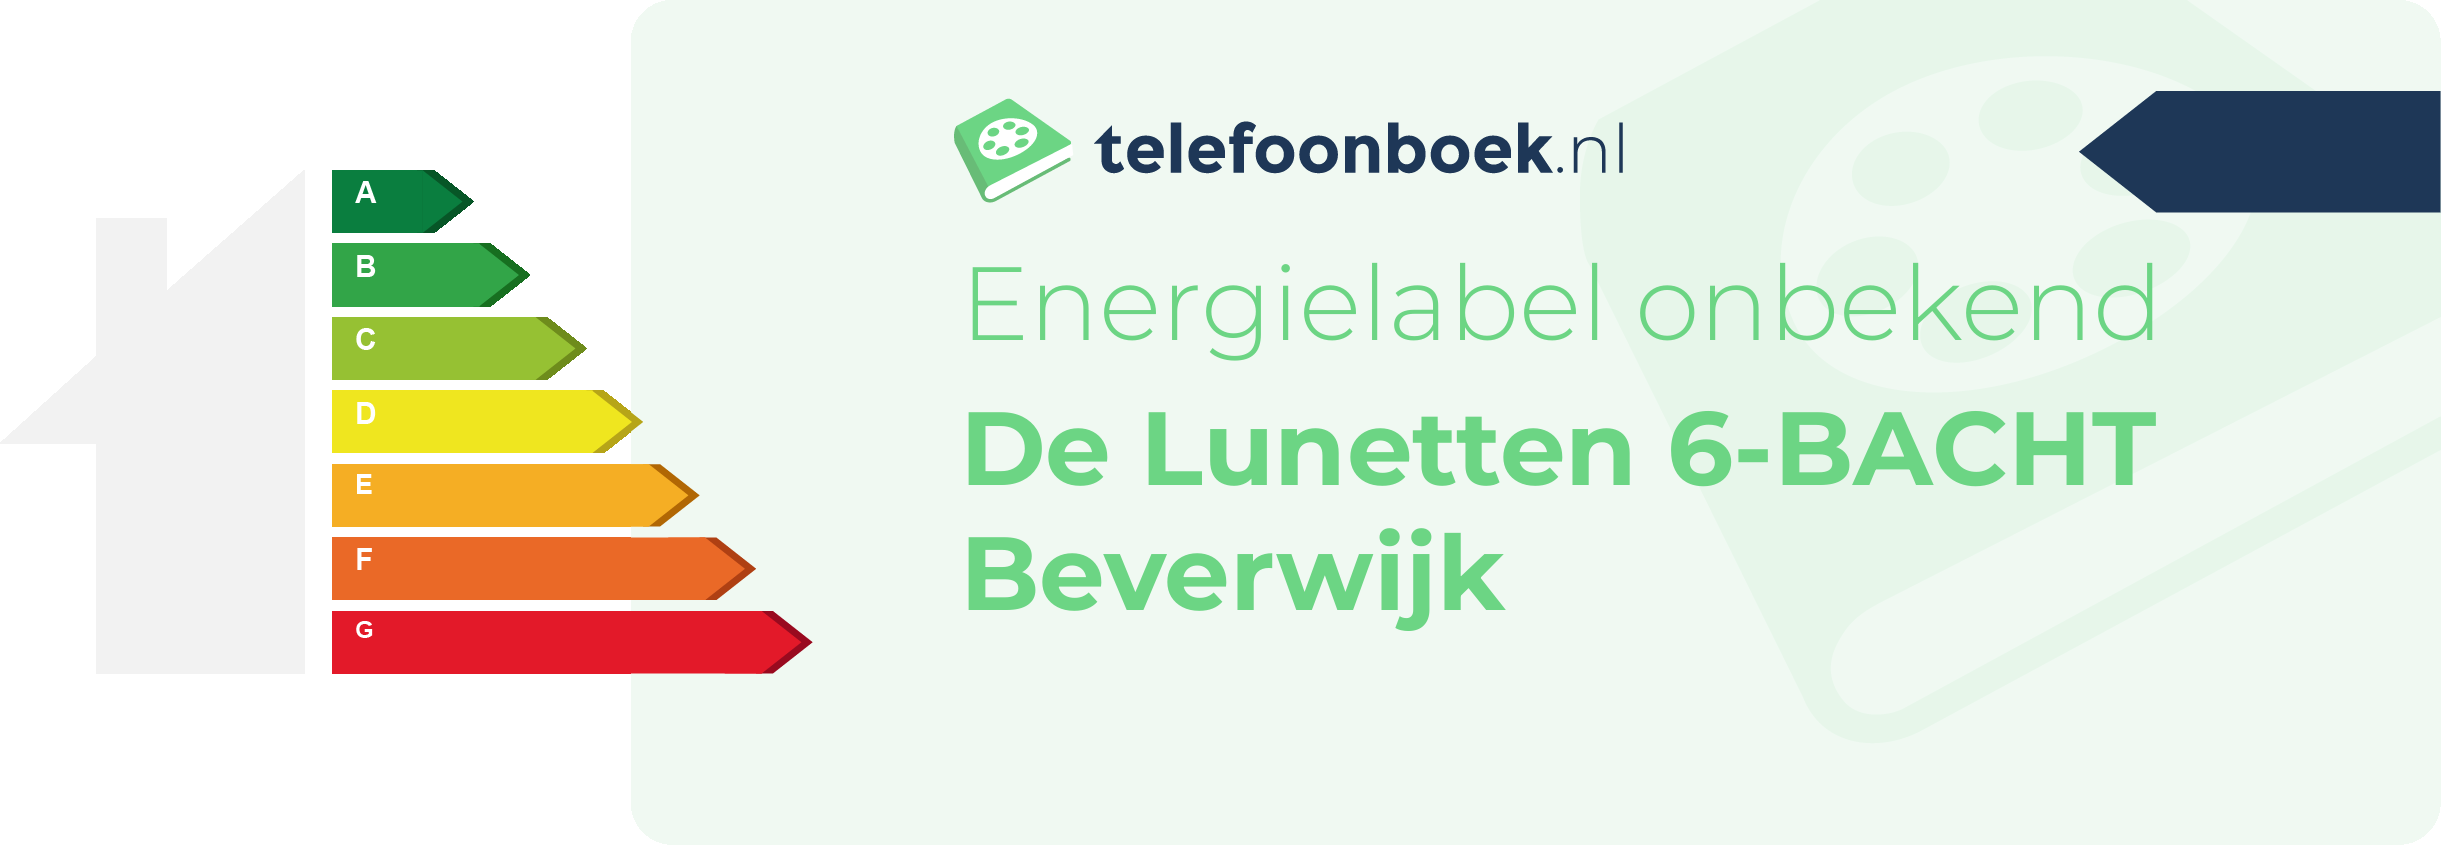 Energielabel De Lunetten 6-BACHT Beverwijk